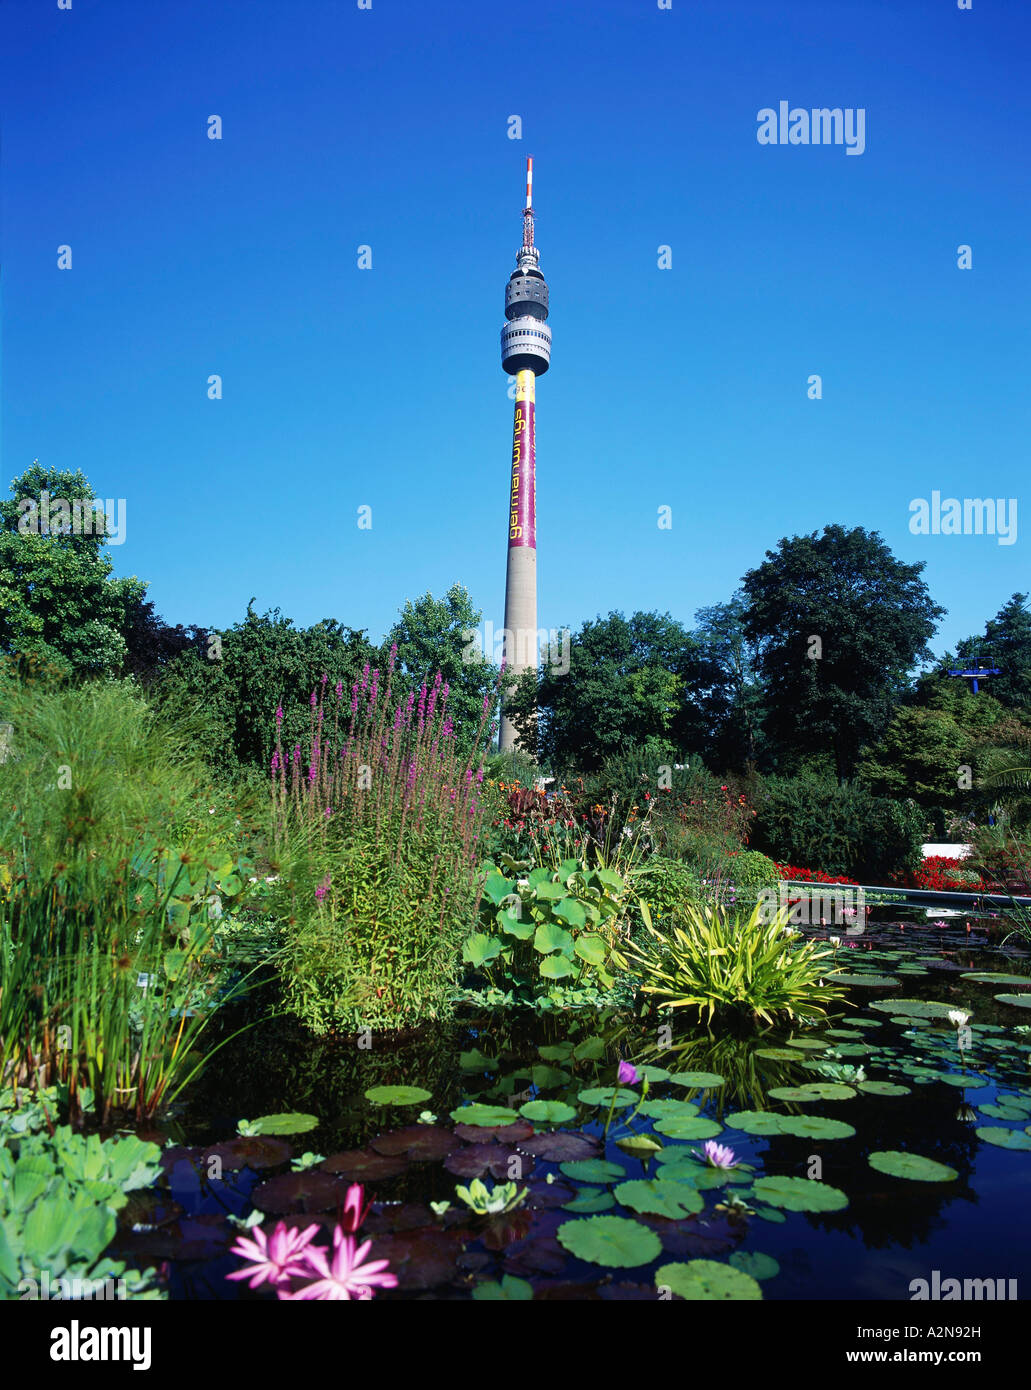 La torre della televisione nel parco, Florianturm, Vestfaliano Park, Dortmund, Renania settentrionale-Vestfalia, Germania Foto Stock